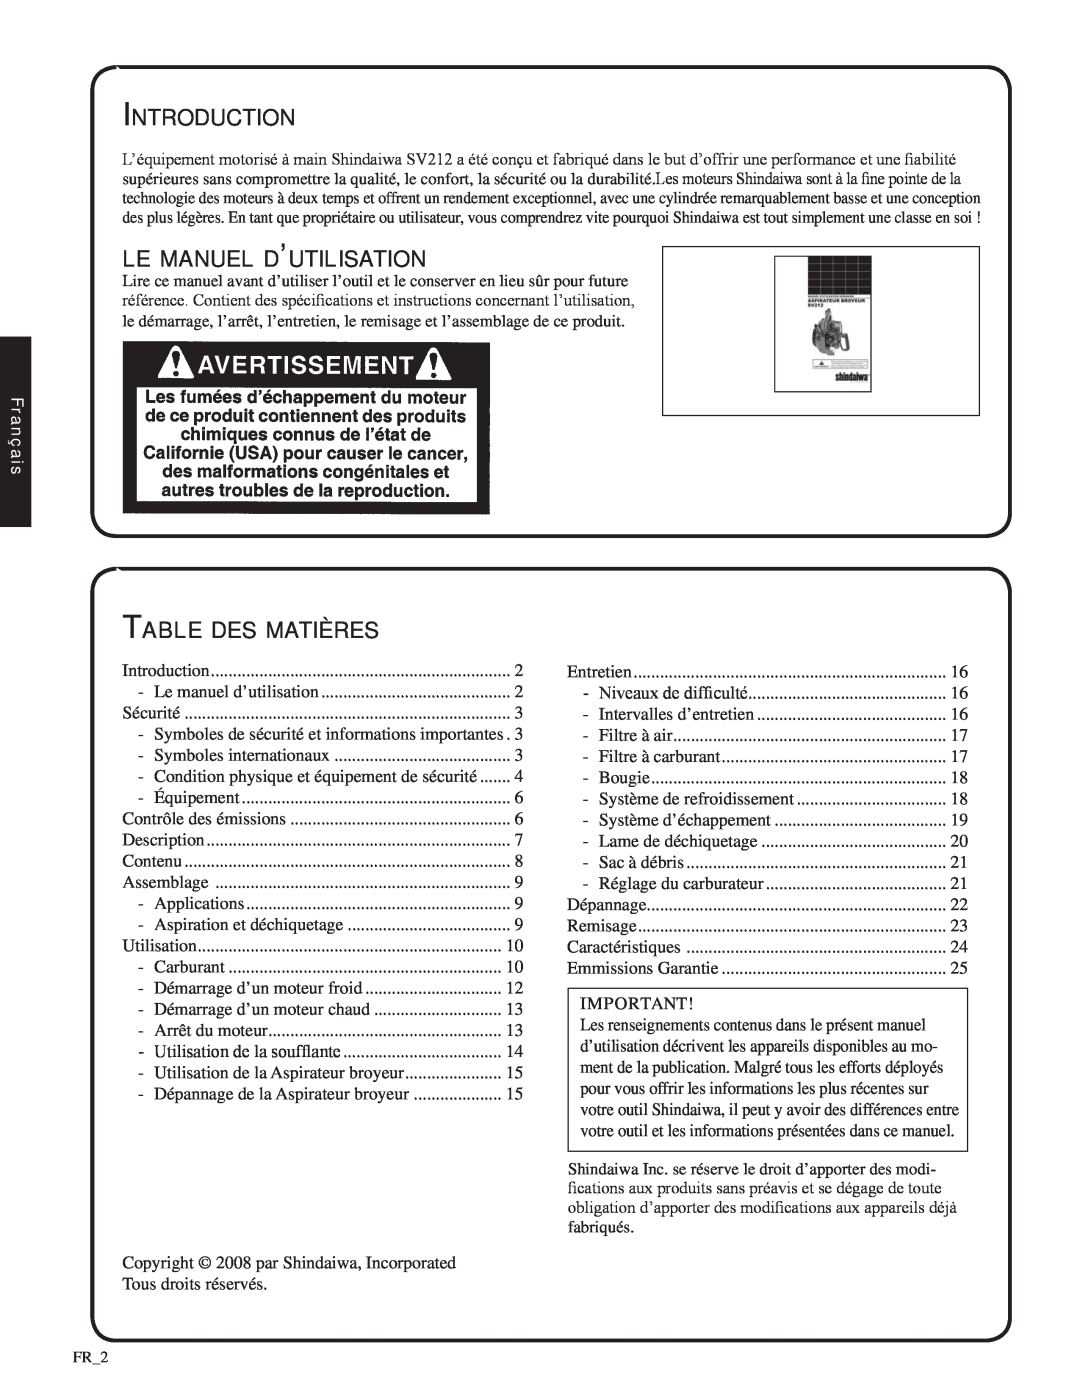 Shindaiwa SV212, 82052 manual le manuel d’utilisation, Table des matières, Français, Introduction 